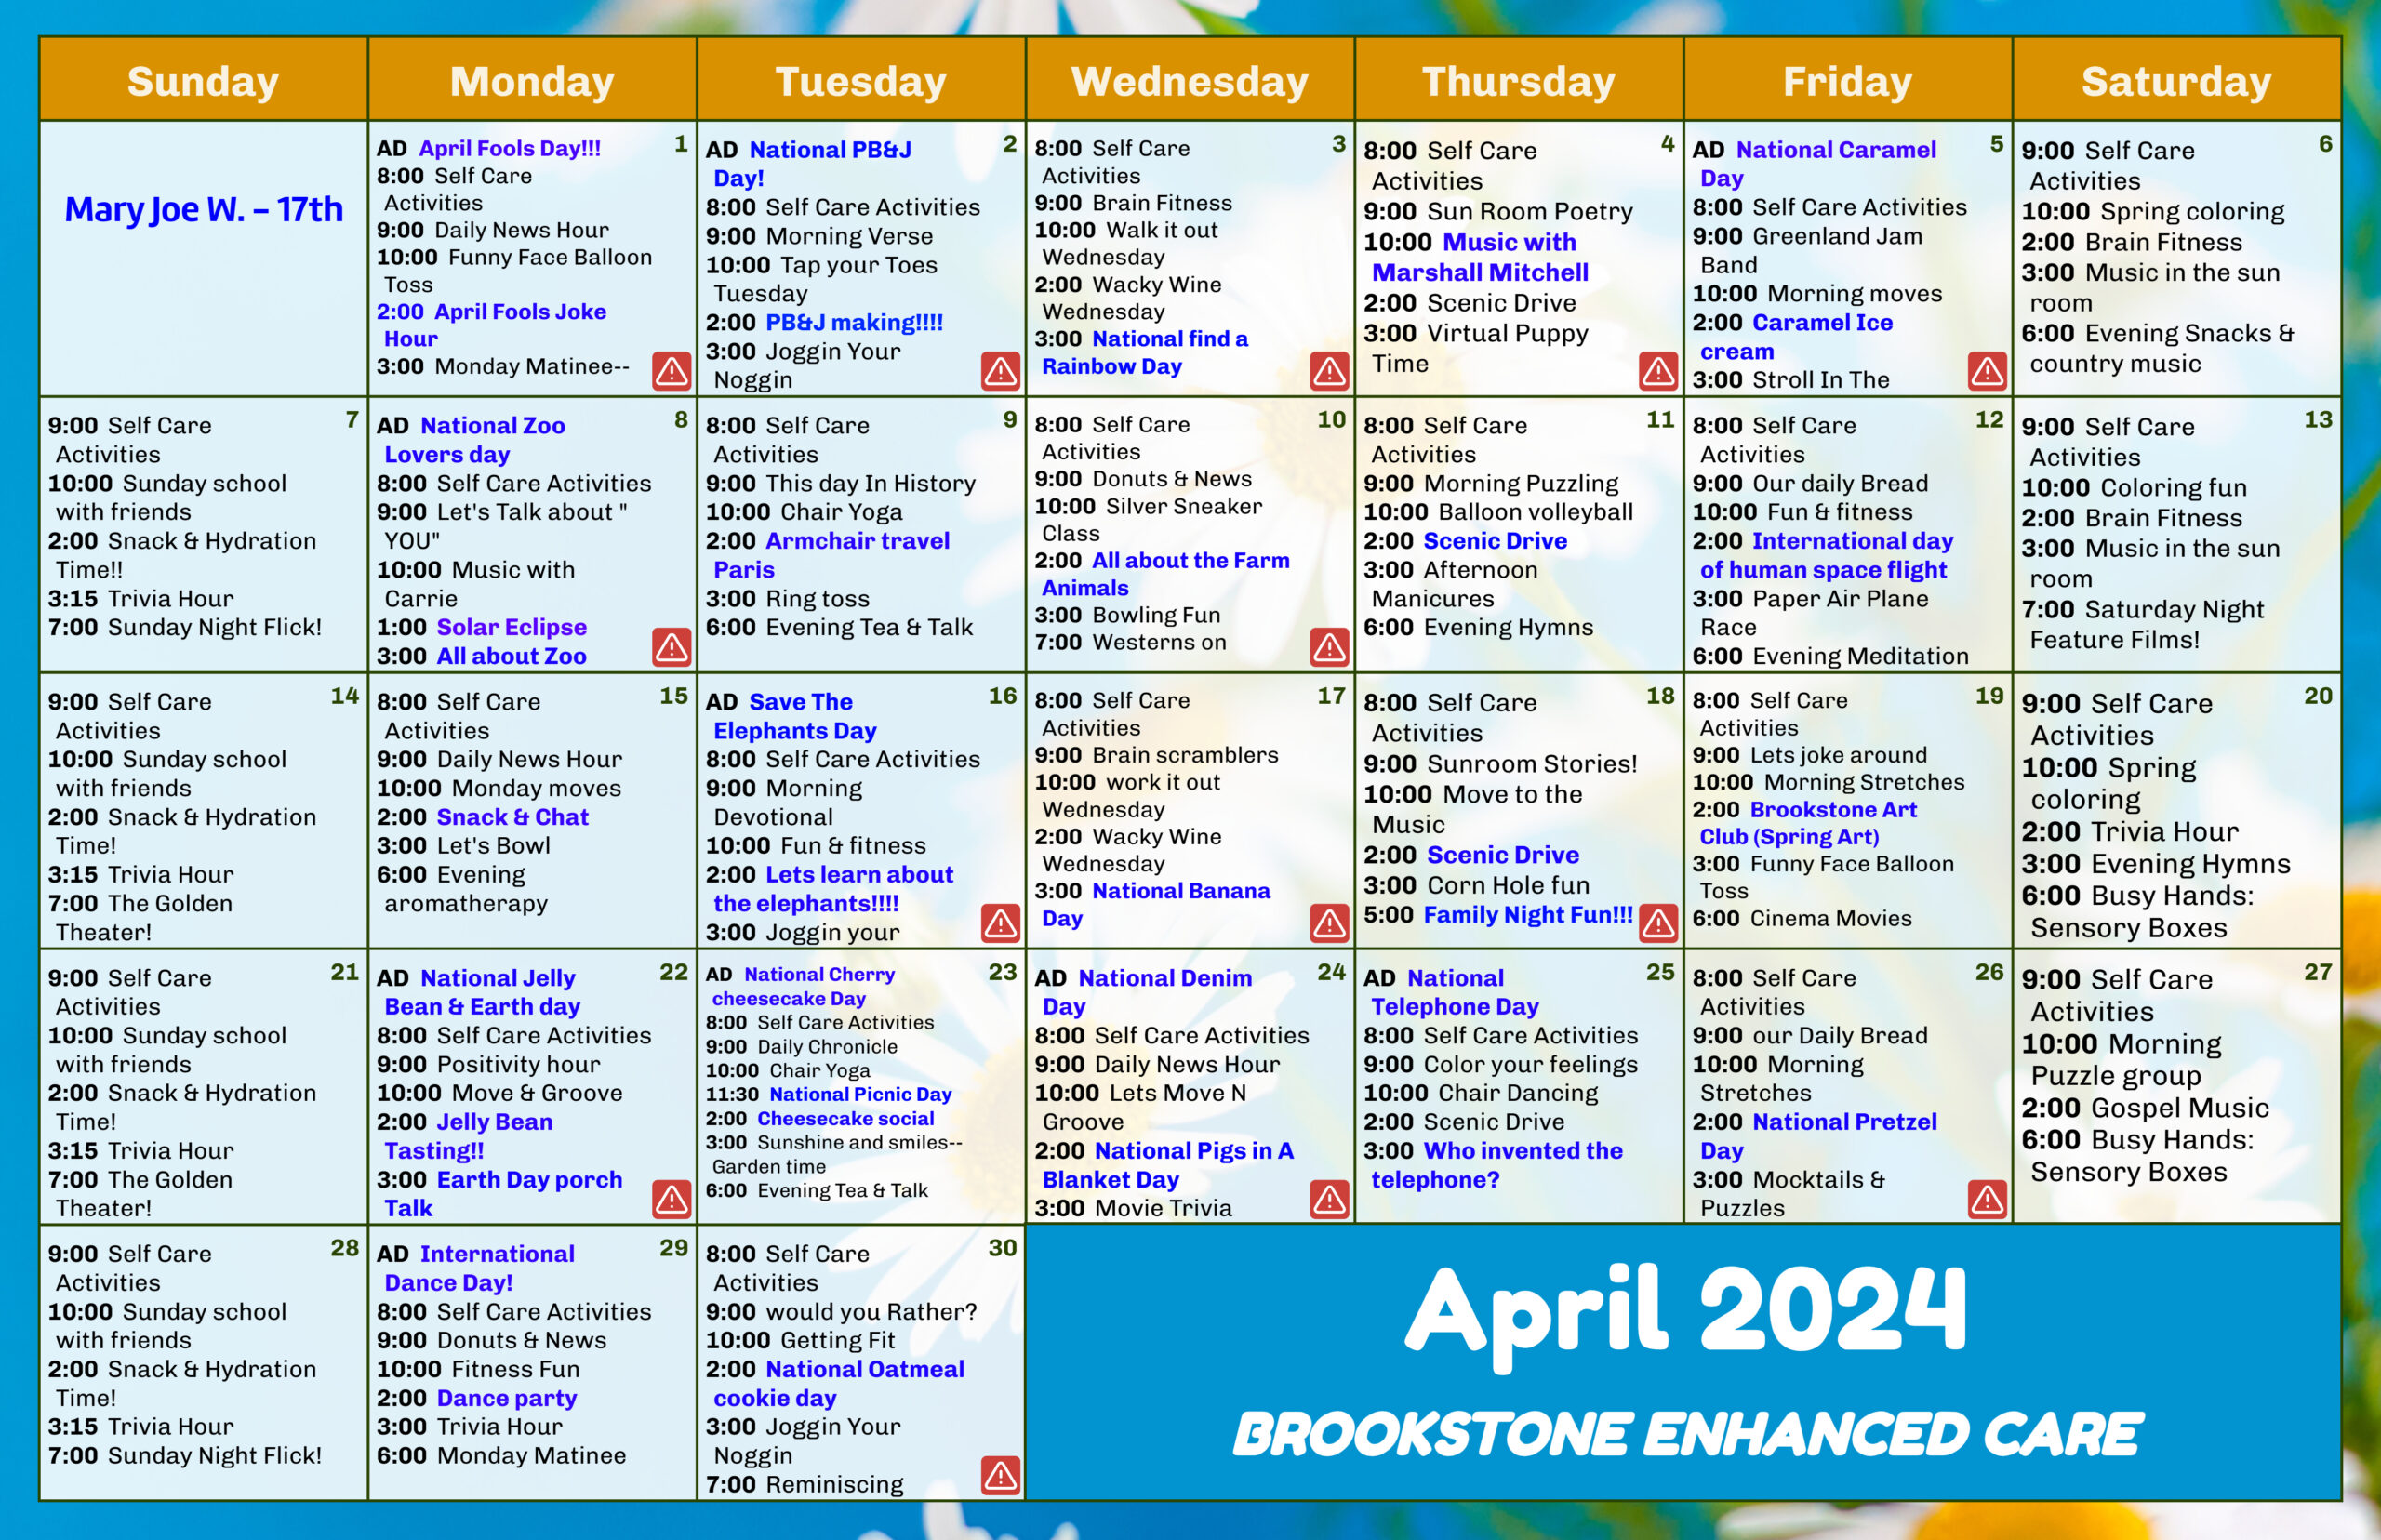 Brookstone Assisted Living - Enhanced Care Events Calendar